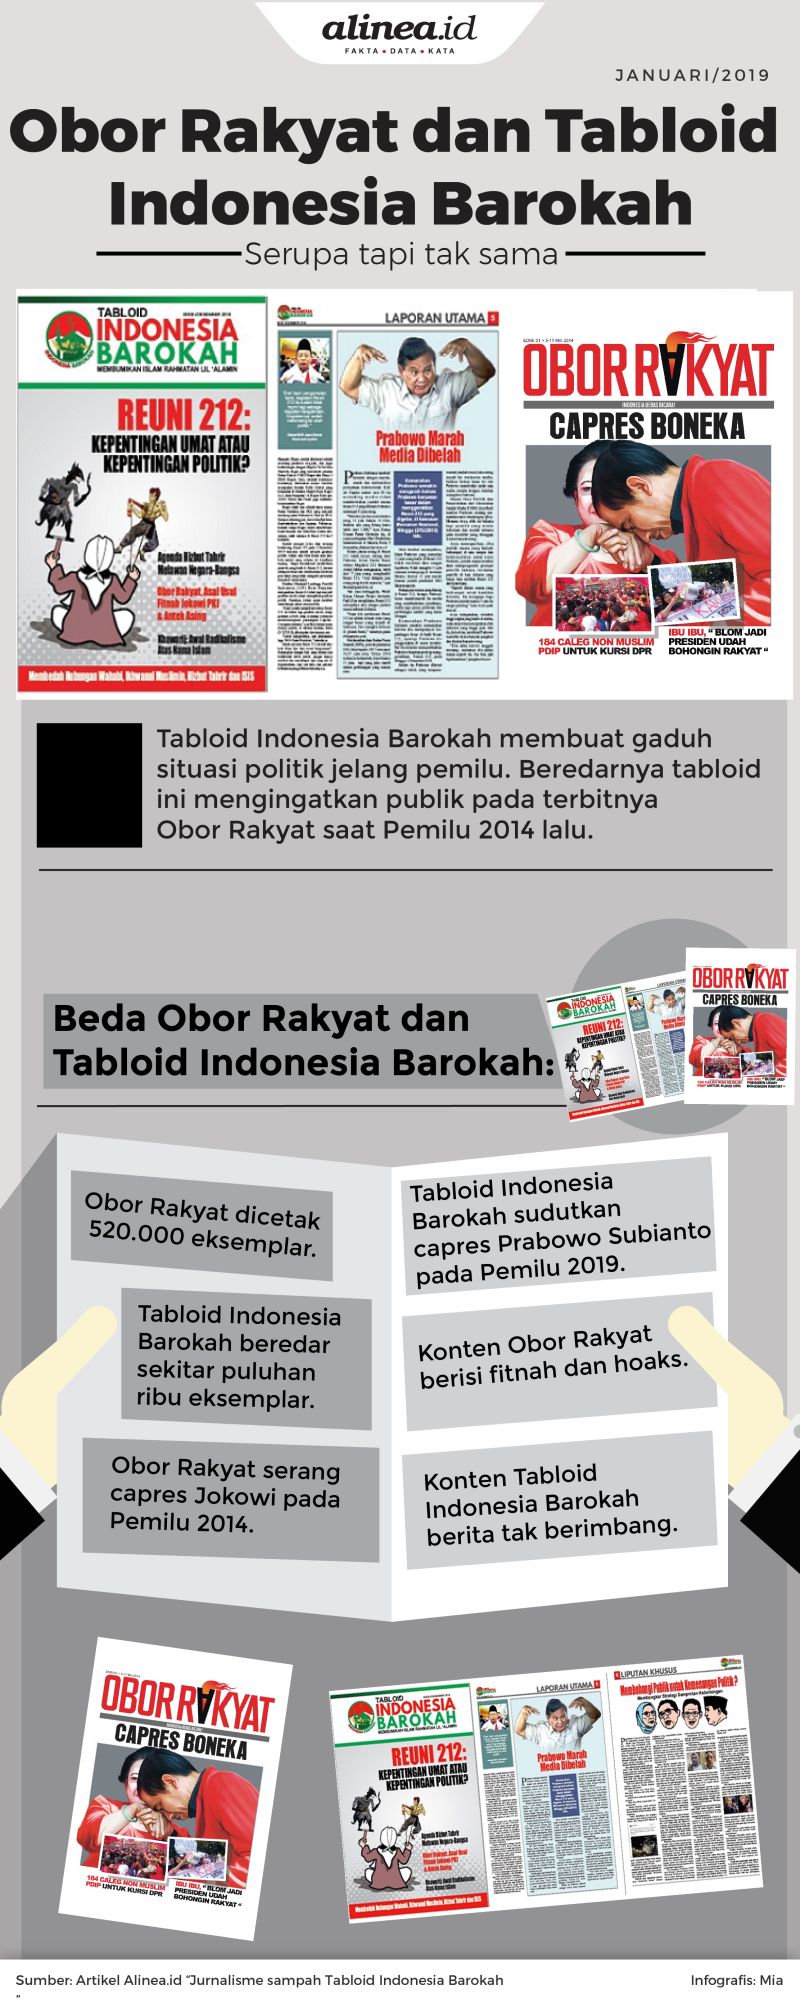 Tabloid Indonesia Barokah mengingatkan publik kepada Obor Rakyat yang terbit pada 2014 lalu.